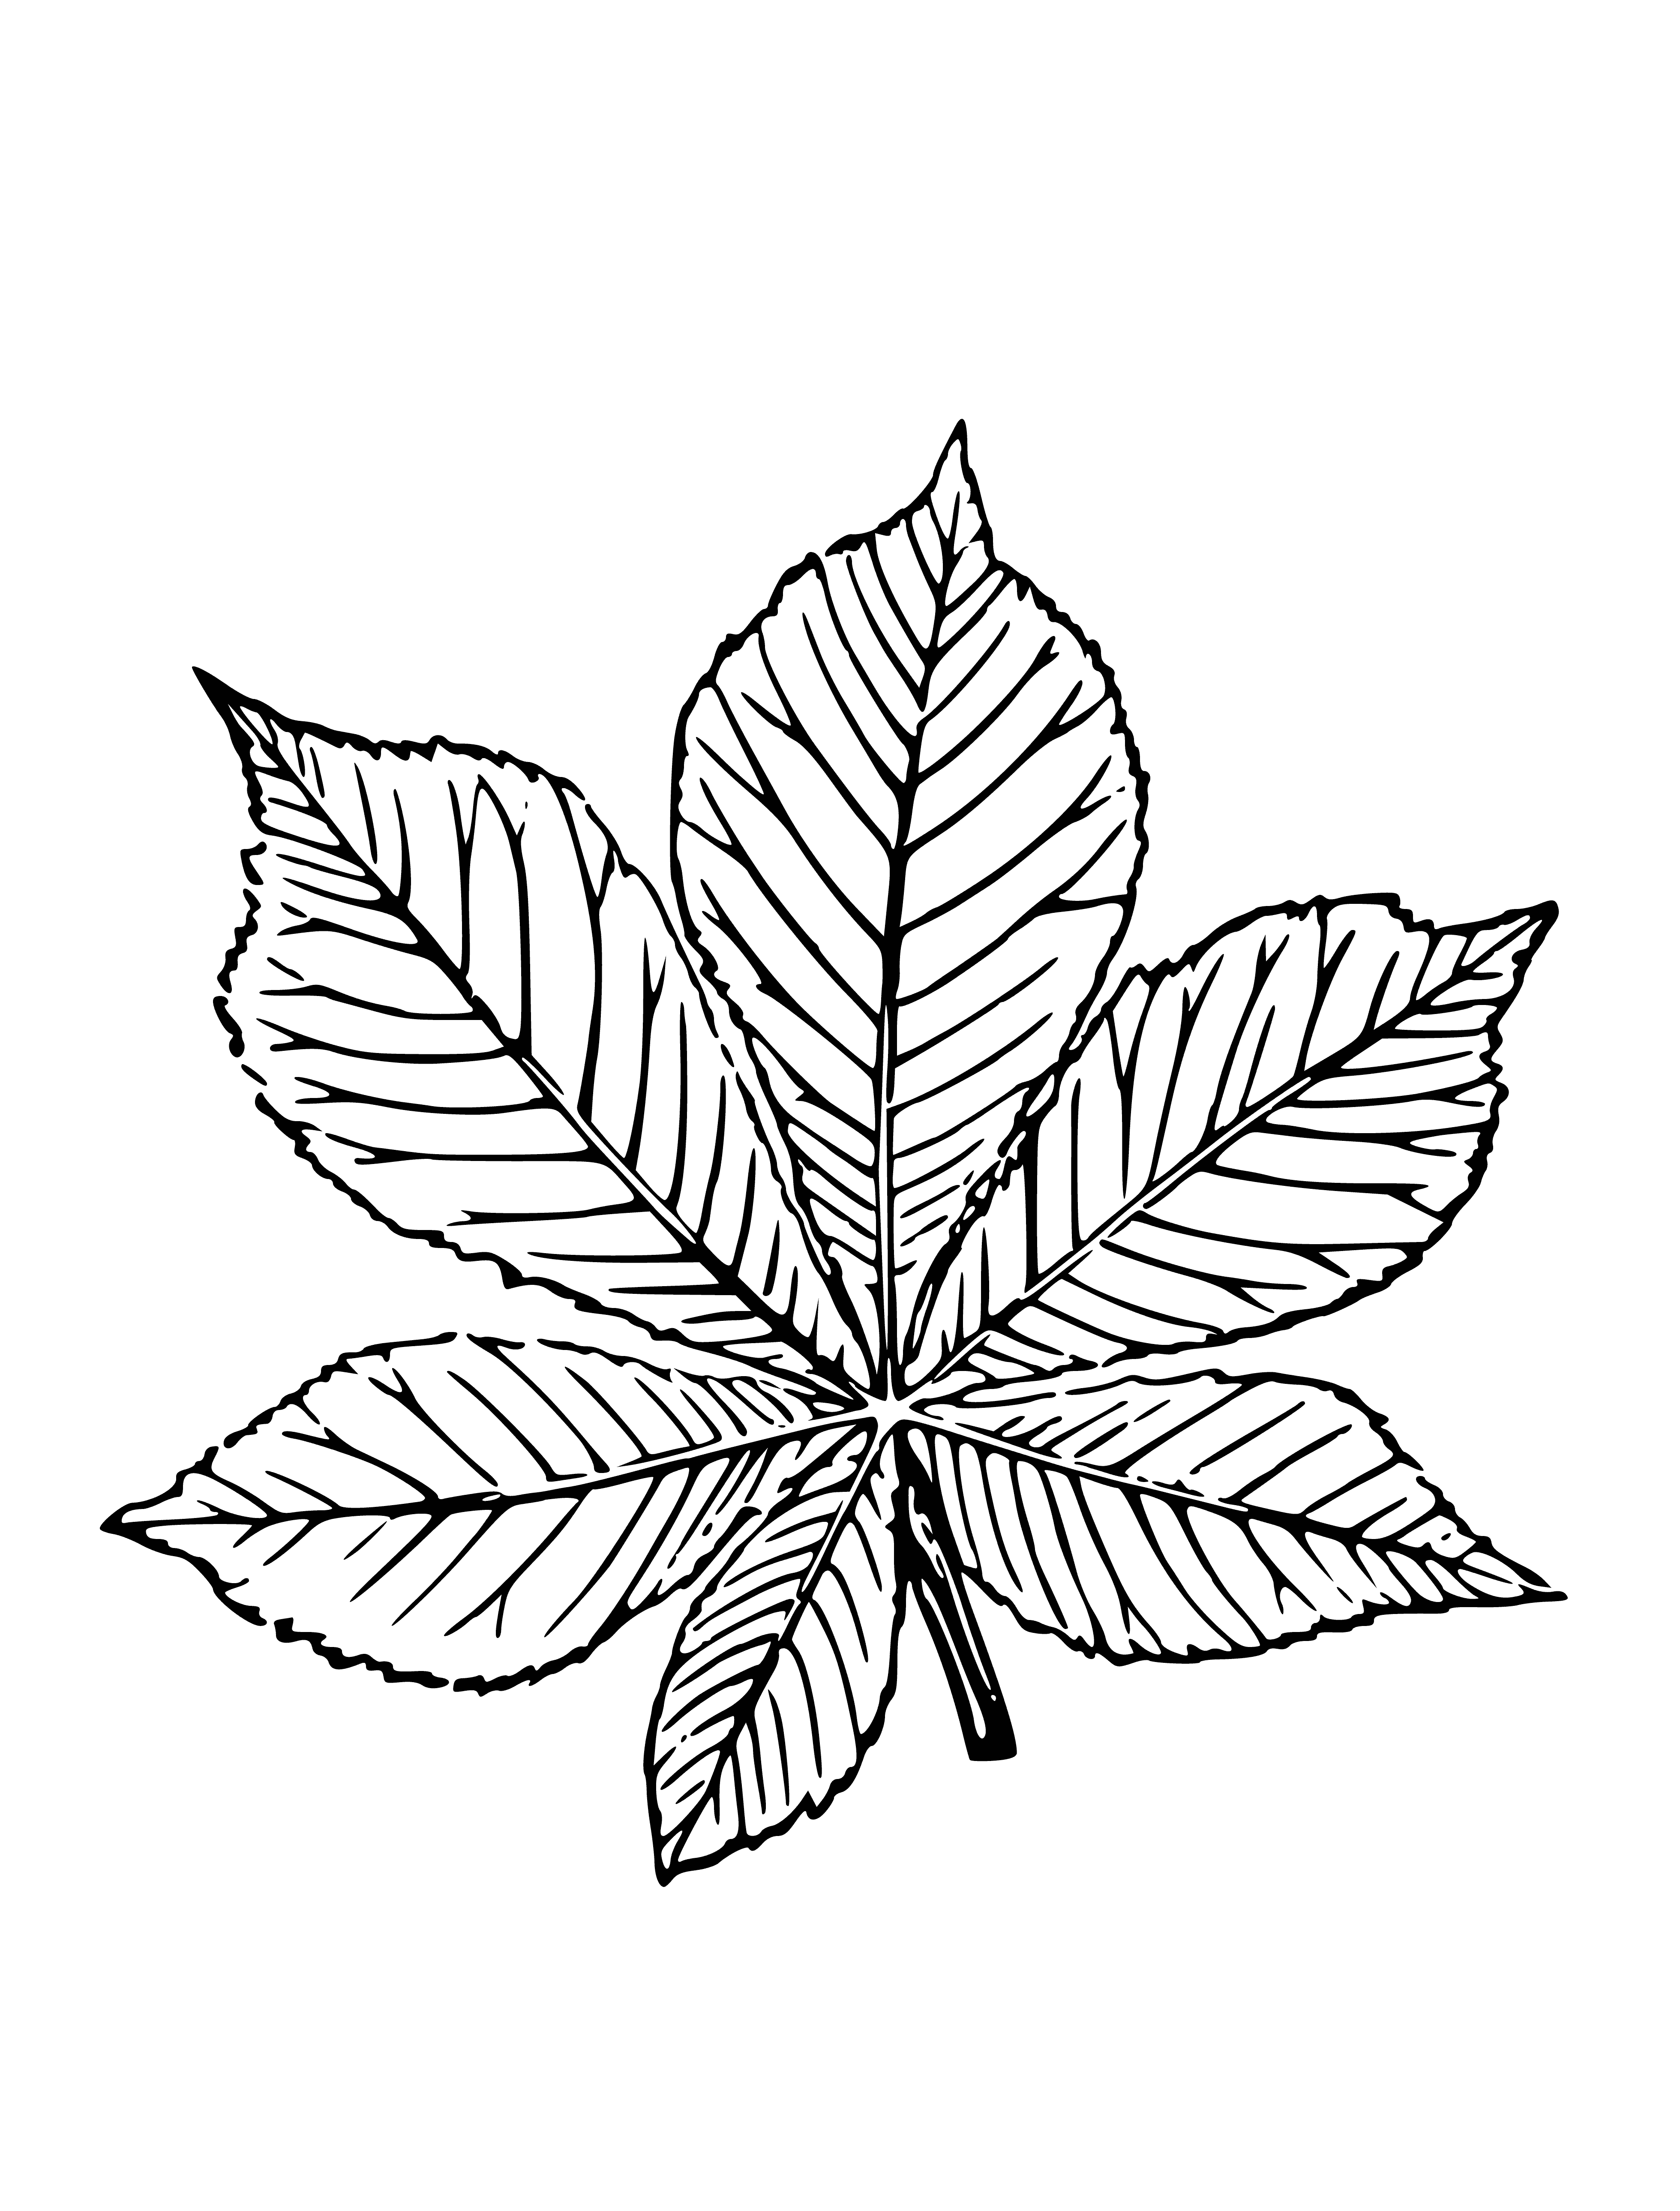 Chestnut leaf coloring page